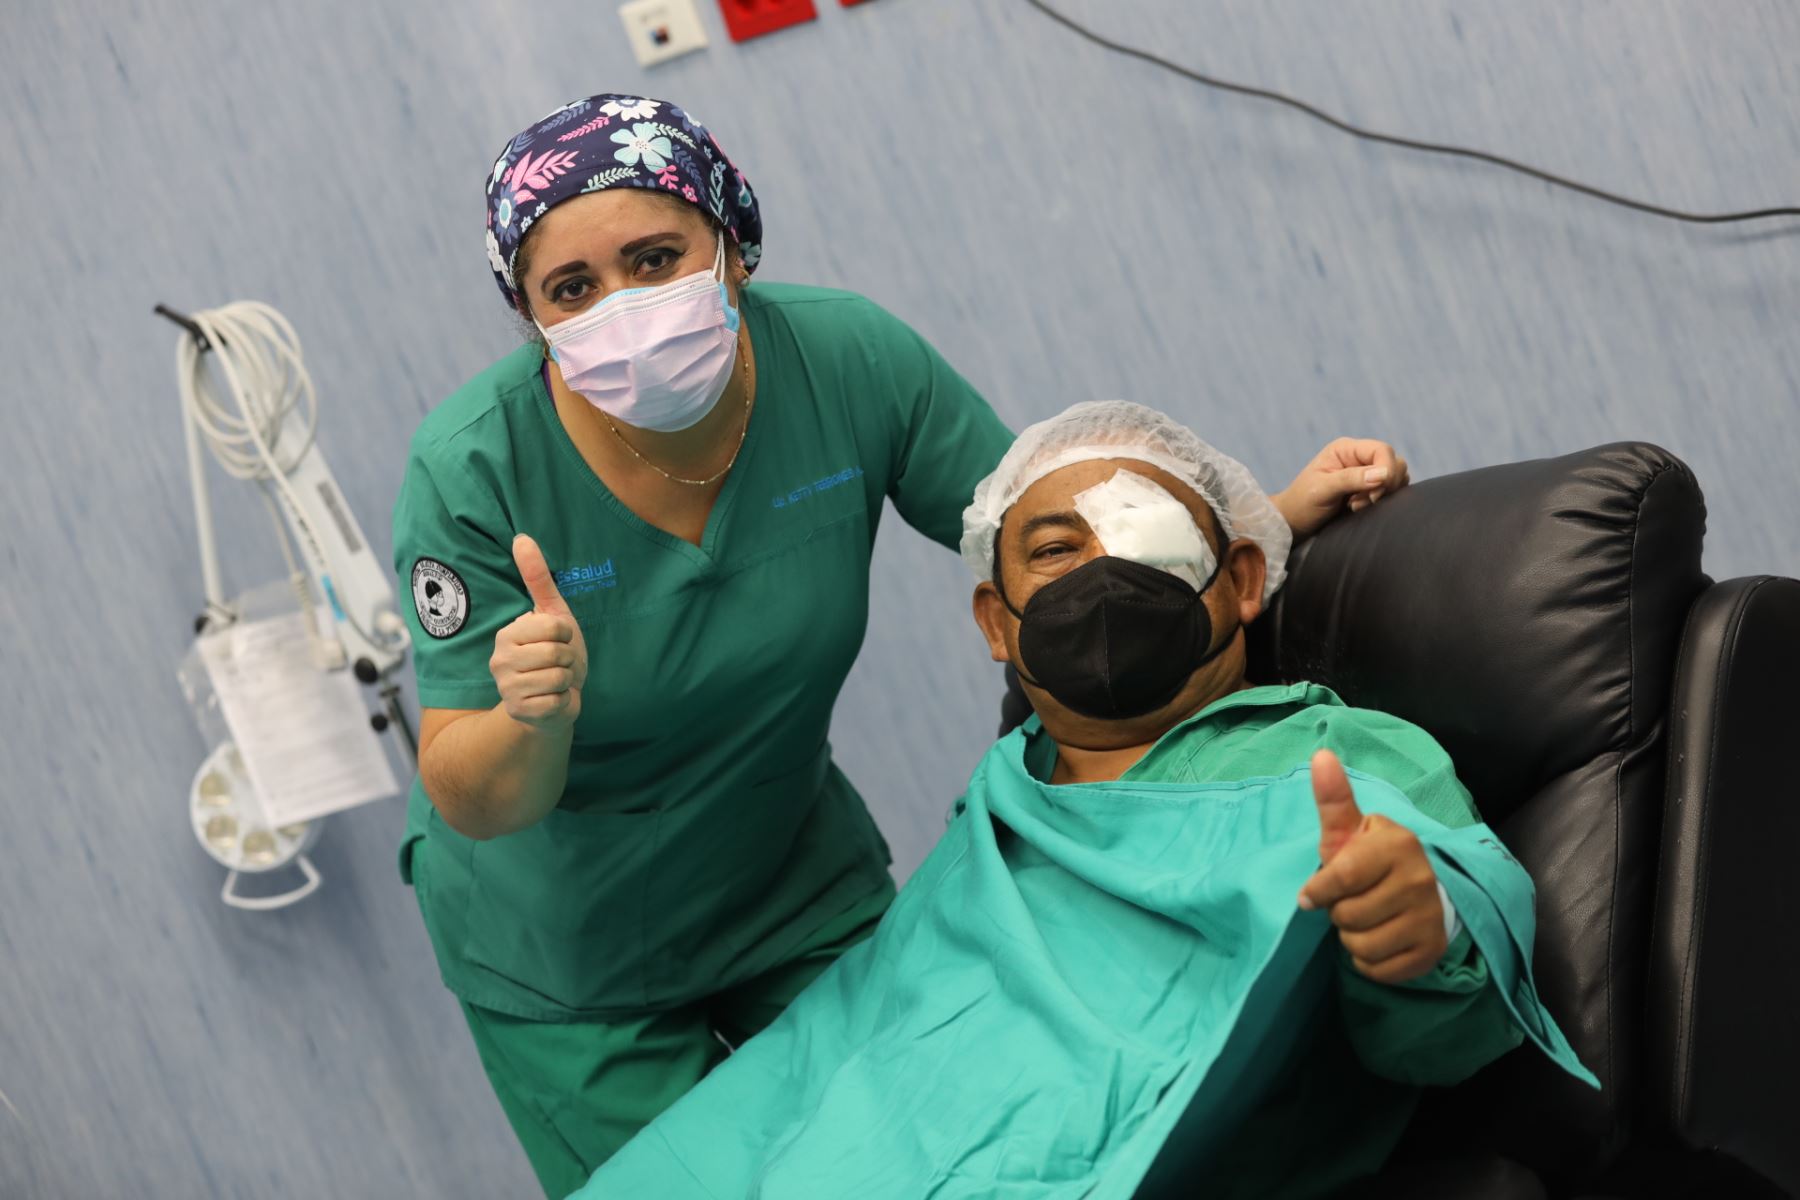 Seguro Social operó a 191 pacientes con cataratas en inicio de desembalse Volver a Ver. Foto: EsSalud